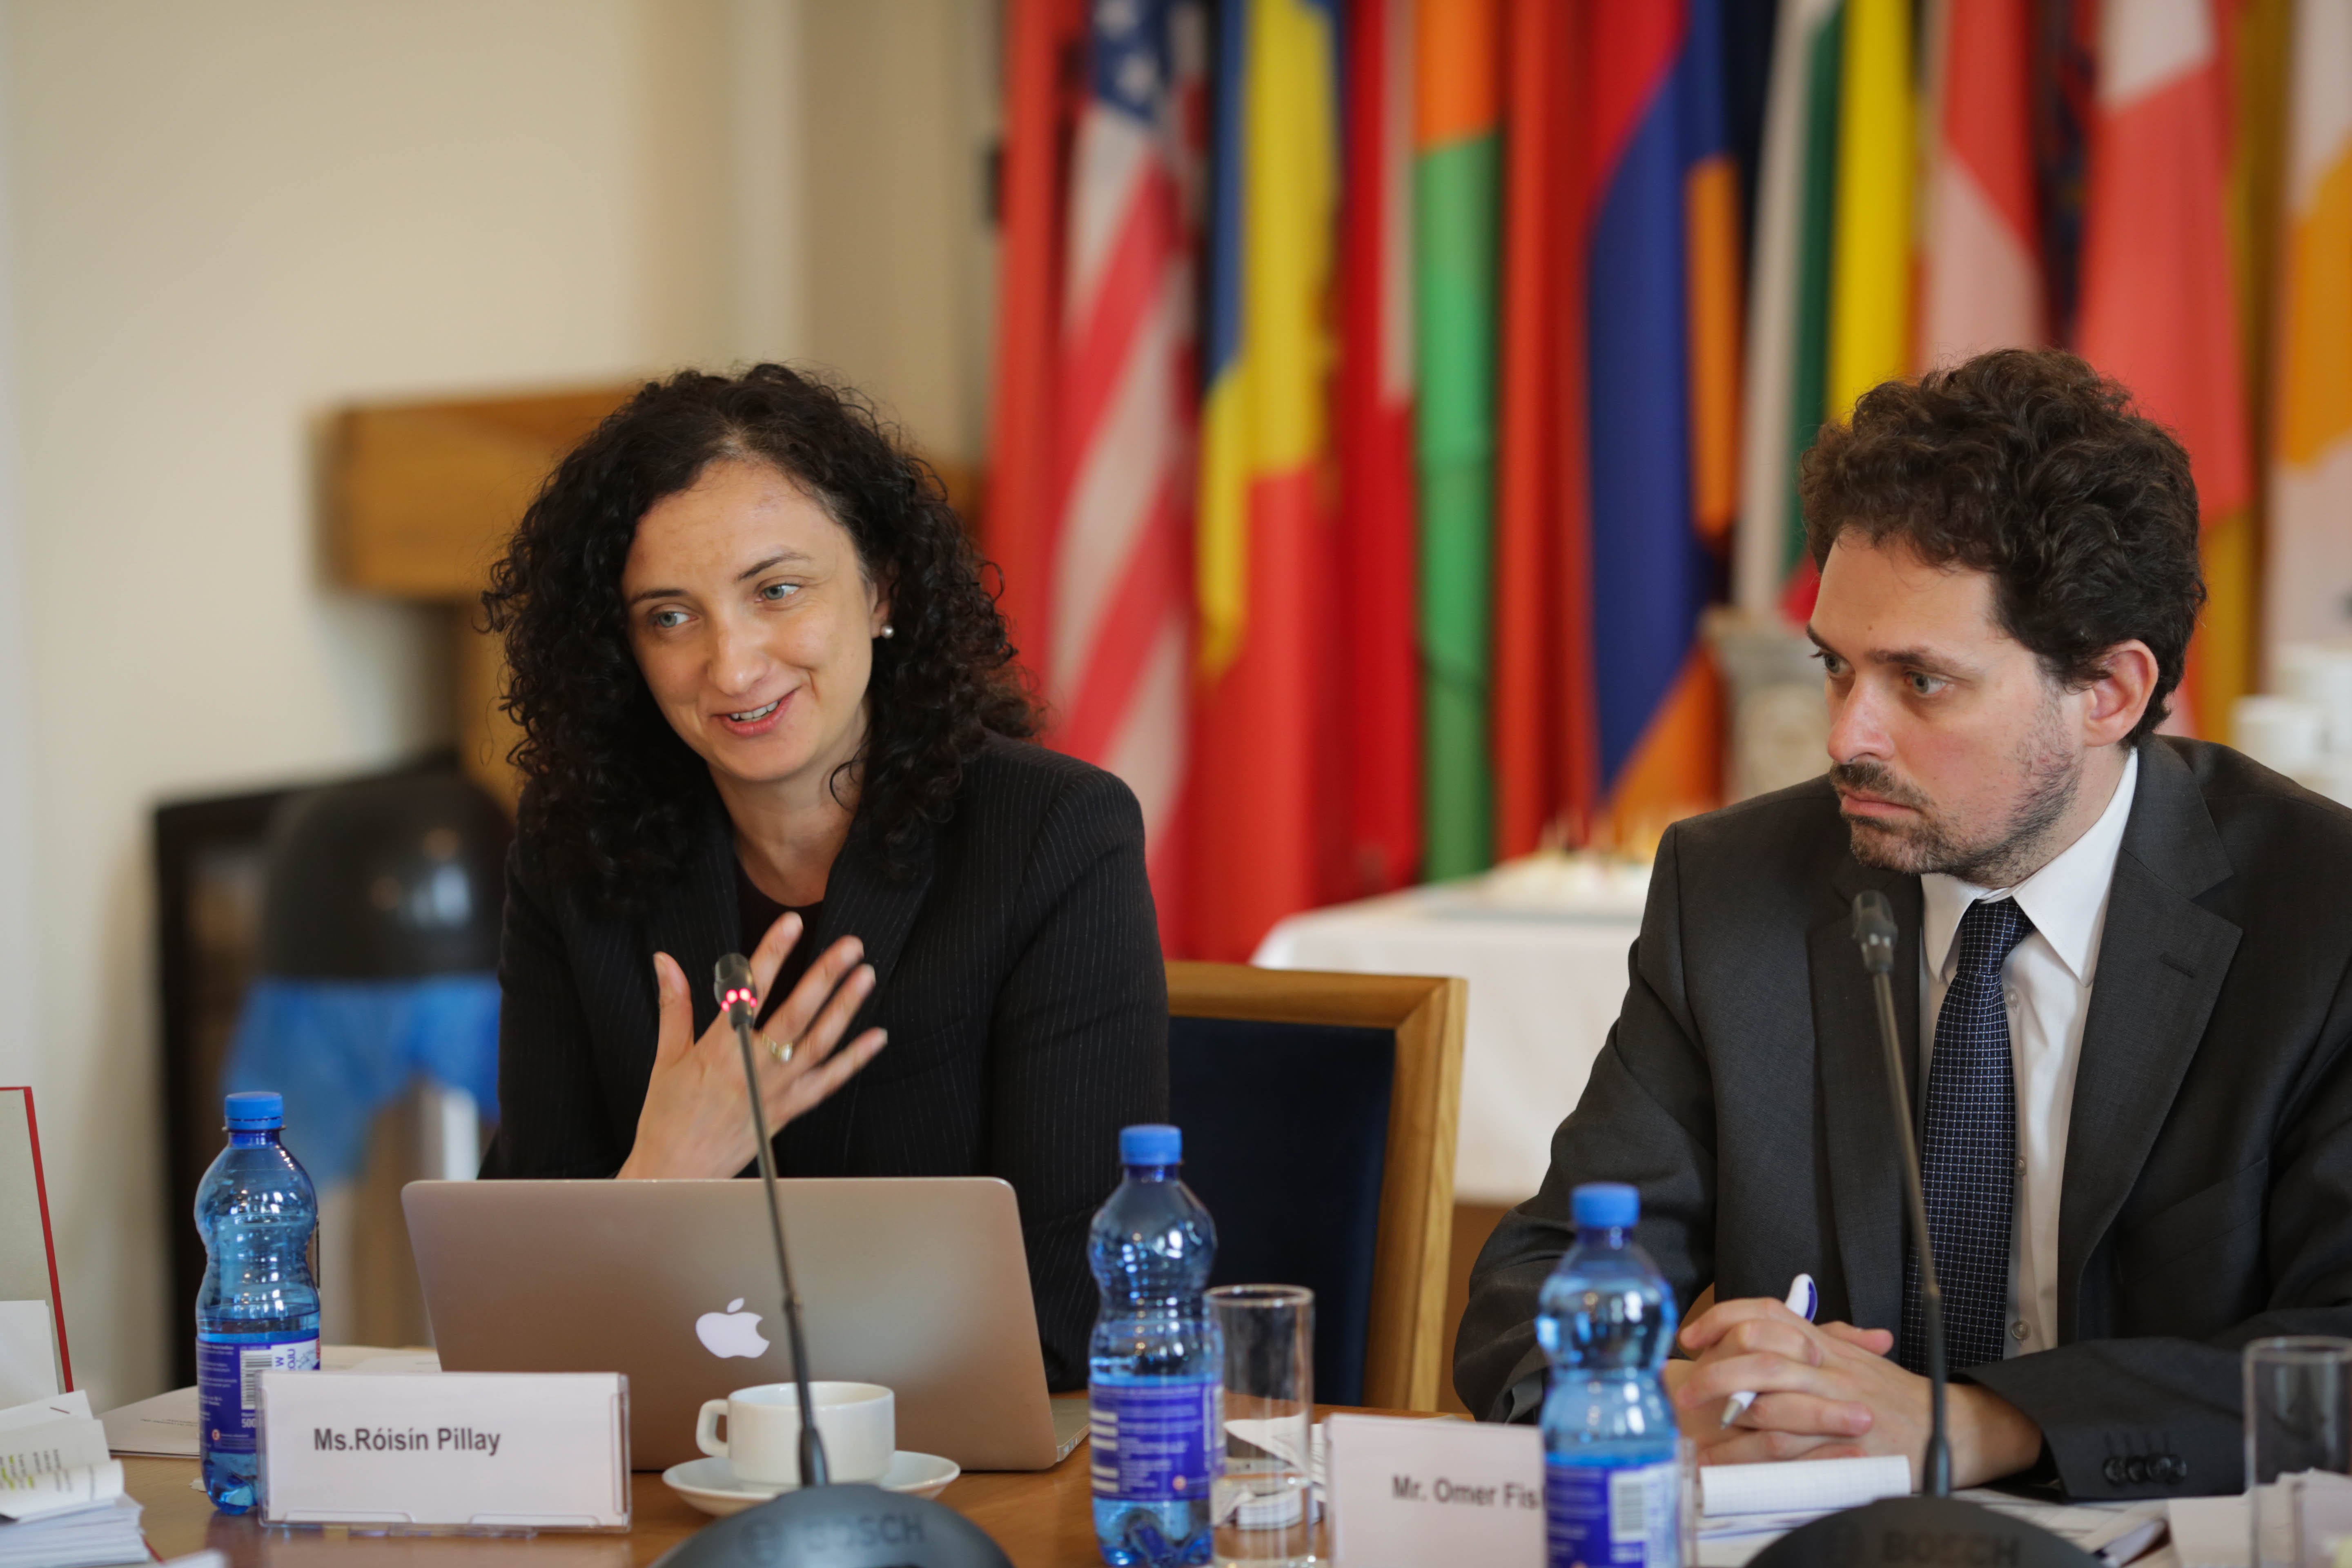 Comisión Internacional de Juristas: "El juicio hace peligrar los derechos humanos"